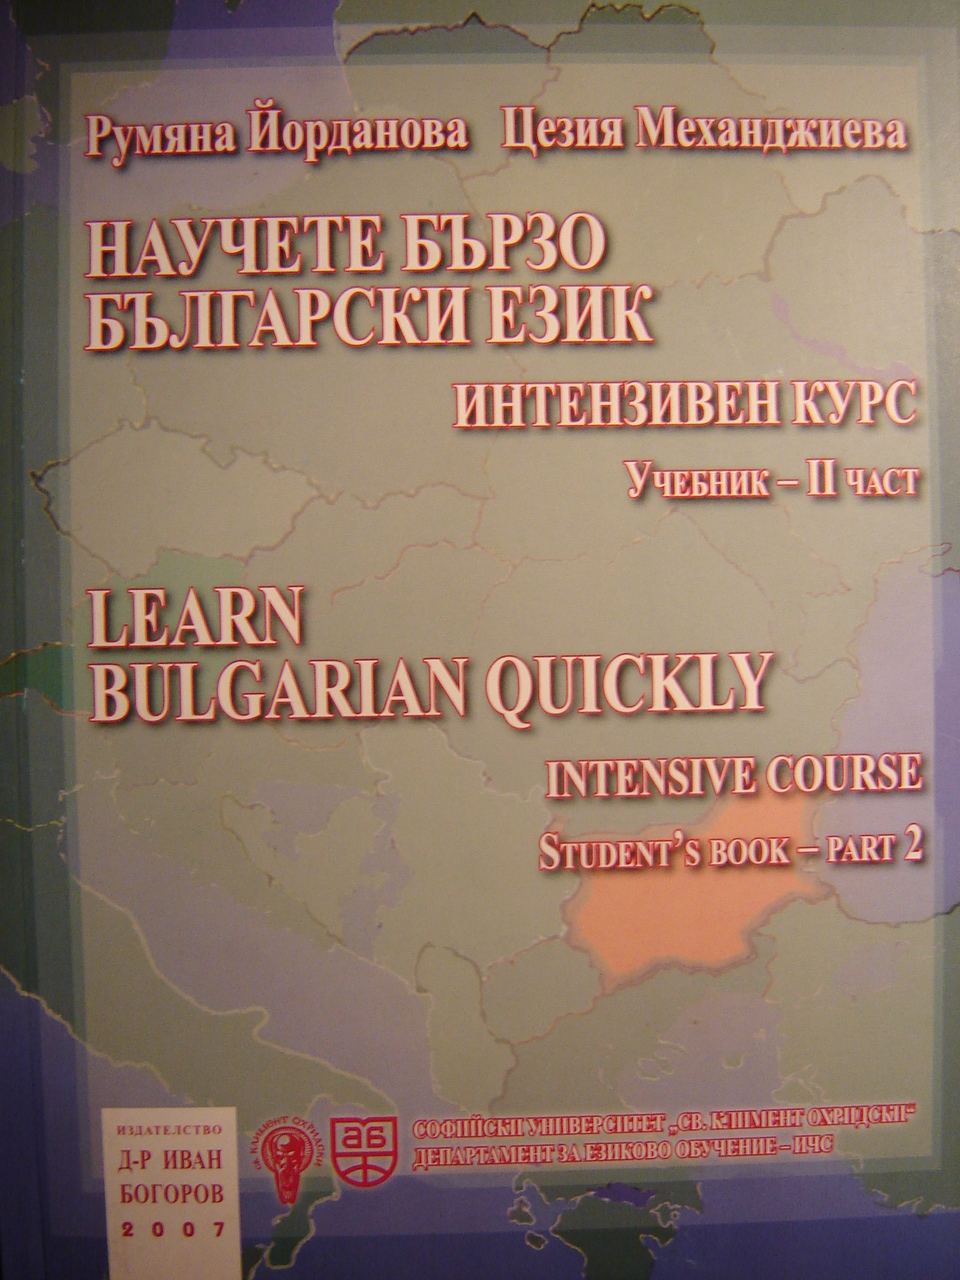 English language jobs in bulgaria